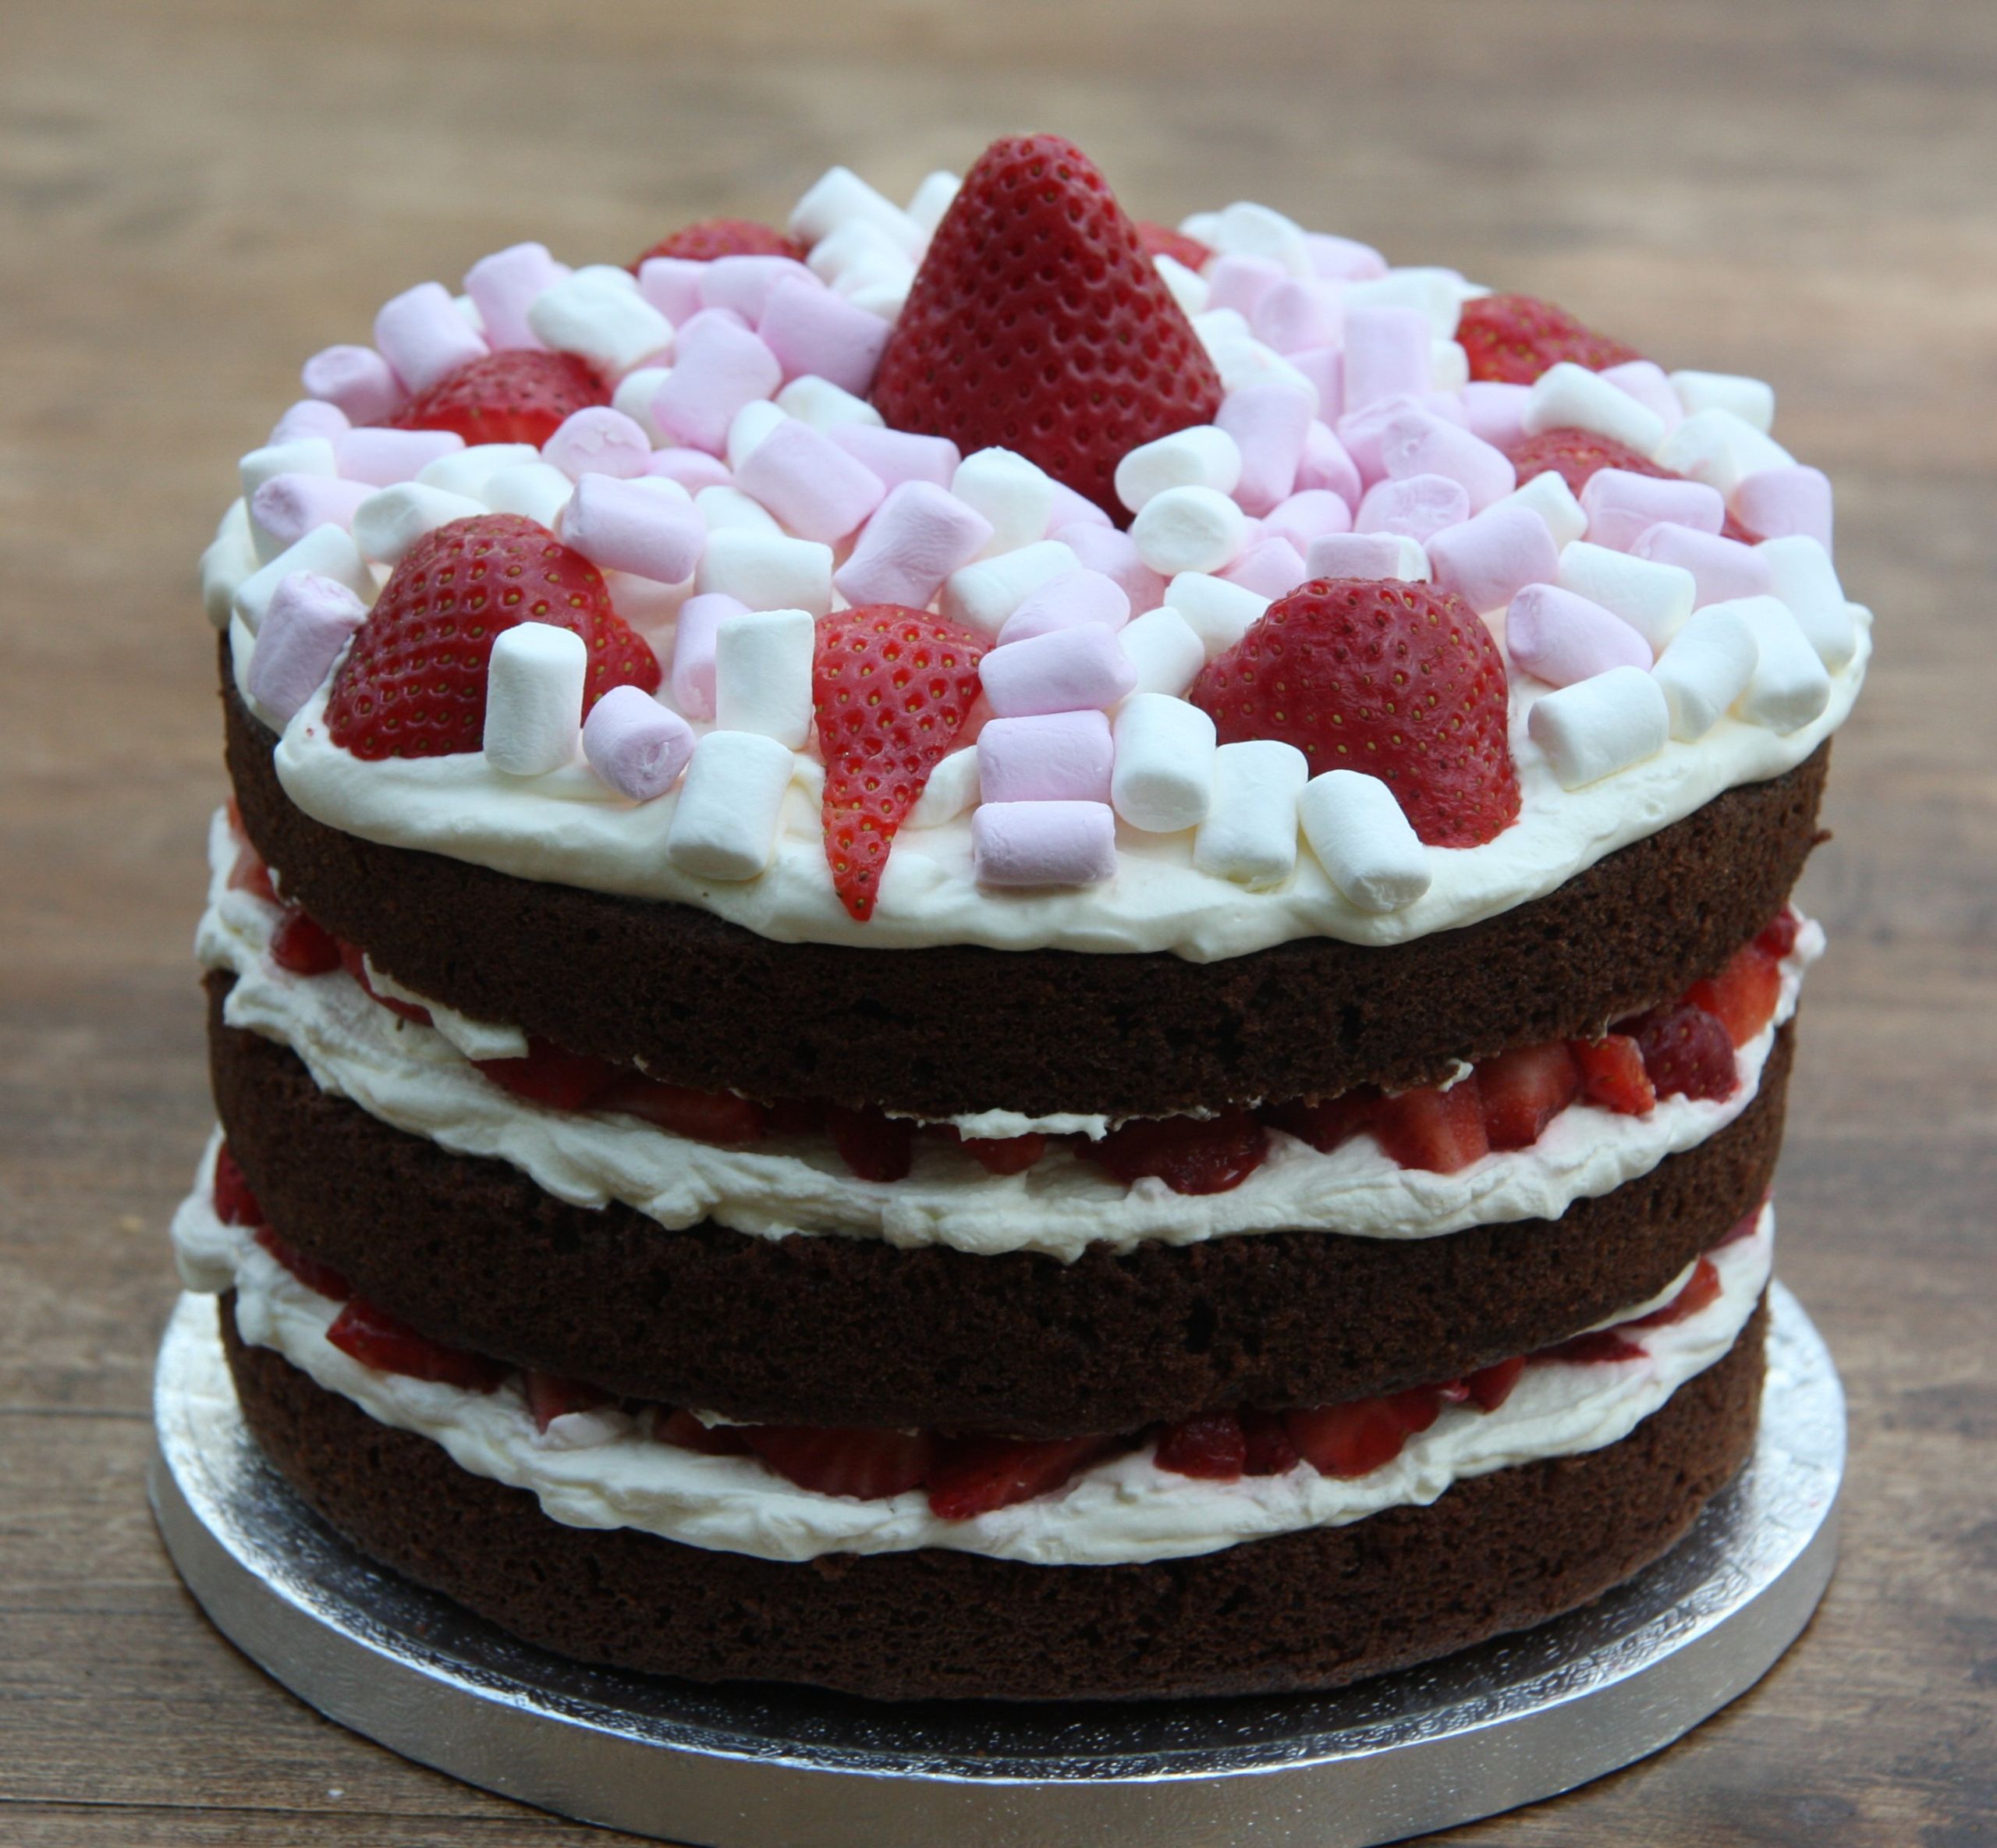 Strawberry Birthday Cakes
 Chocolate Birthday Cake with Strawberries and Cream and